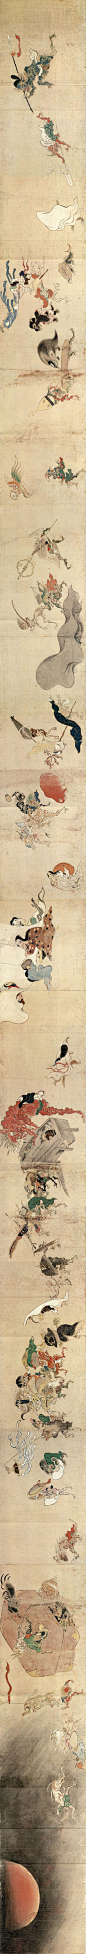 百鬼夜行绘卷是描绘“百鬼夜行”的绘卷物之总称。最著名的是真珠庵本，室町时代的绘卷，传说是日本土佐派画家土佐光信所作，但无确证。内容以称作付丧神的器物妖怪为中心。